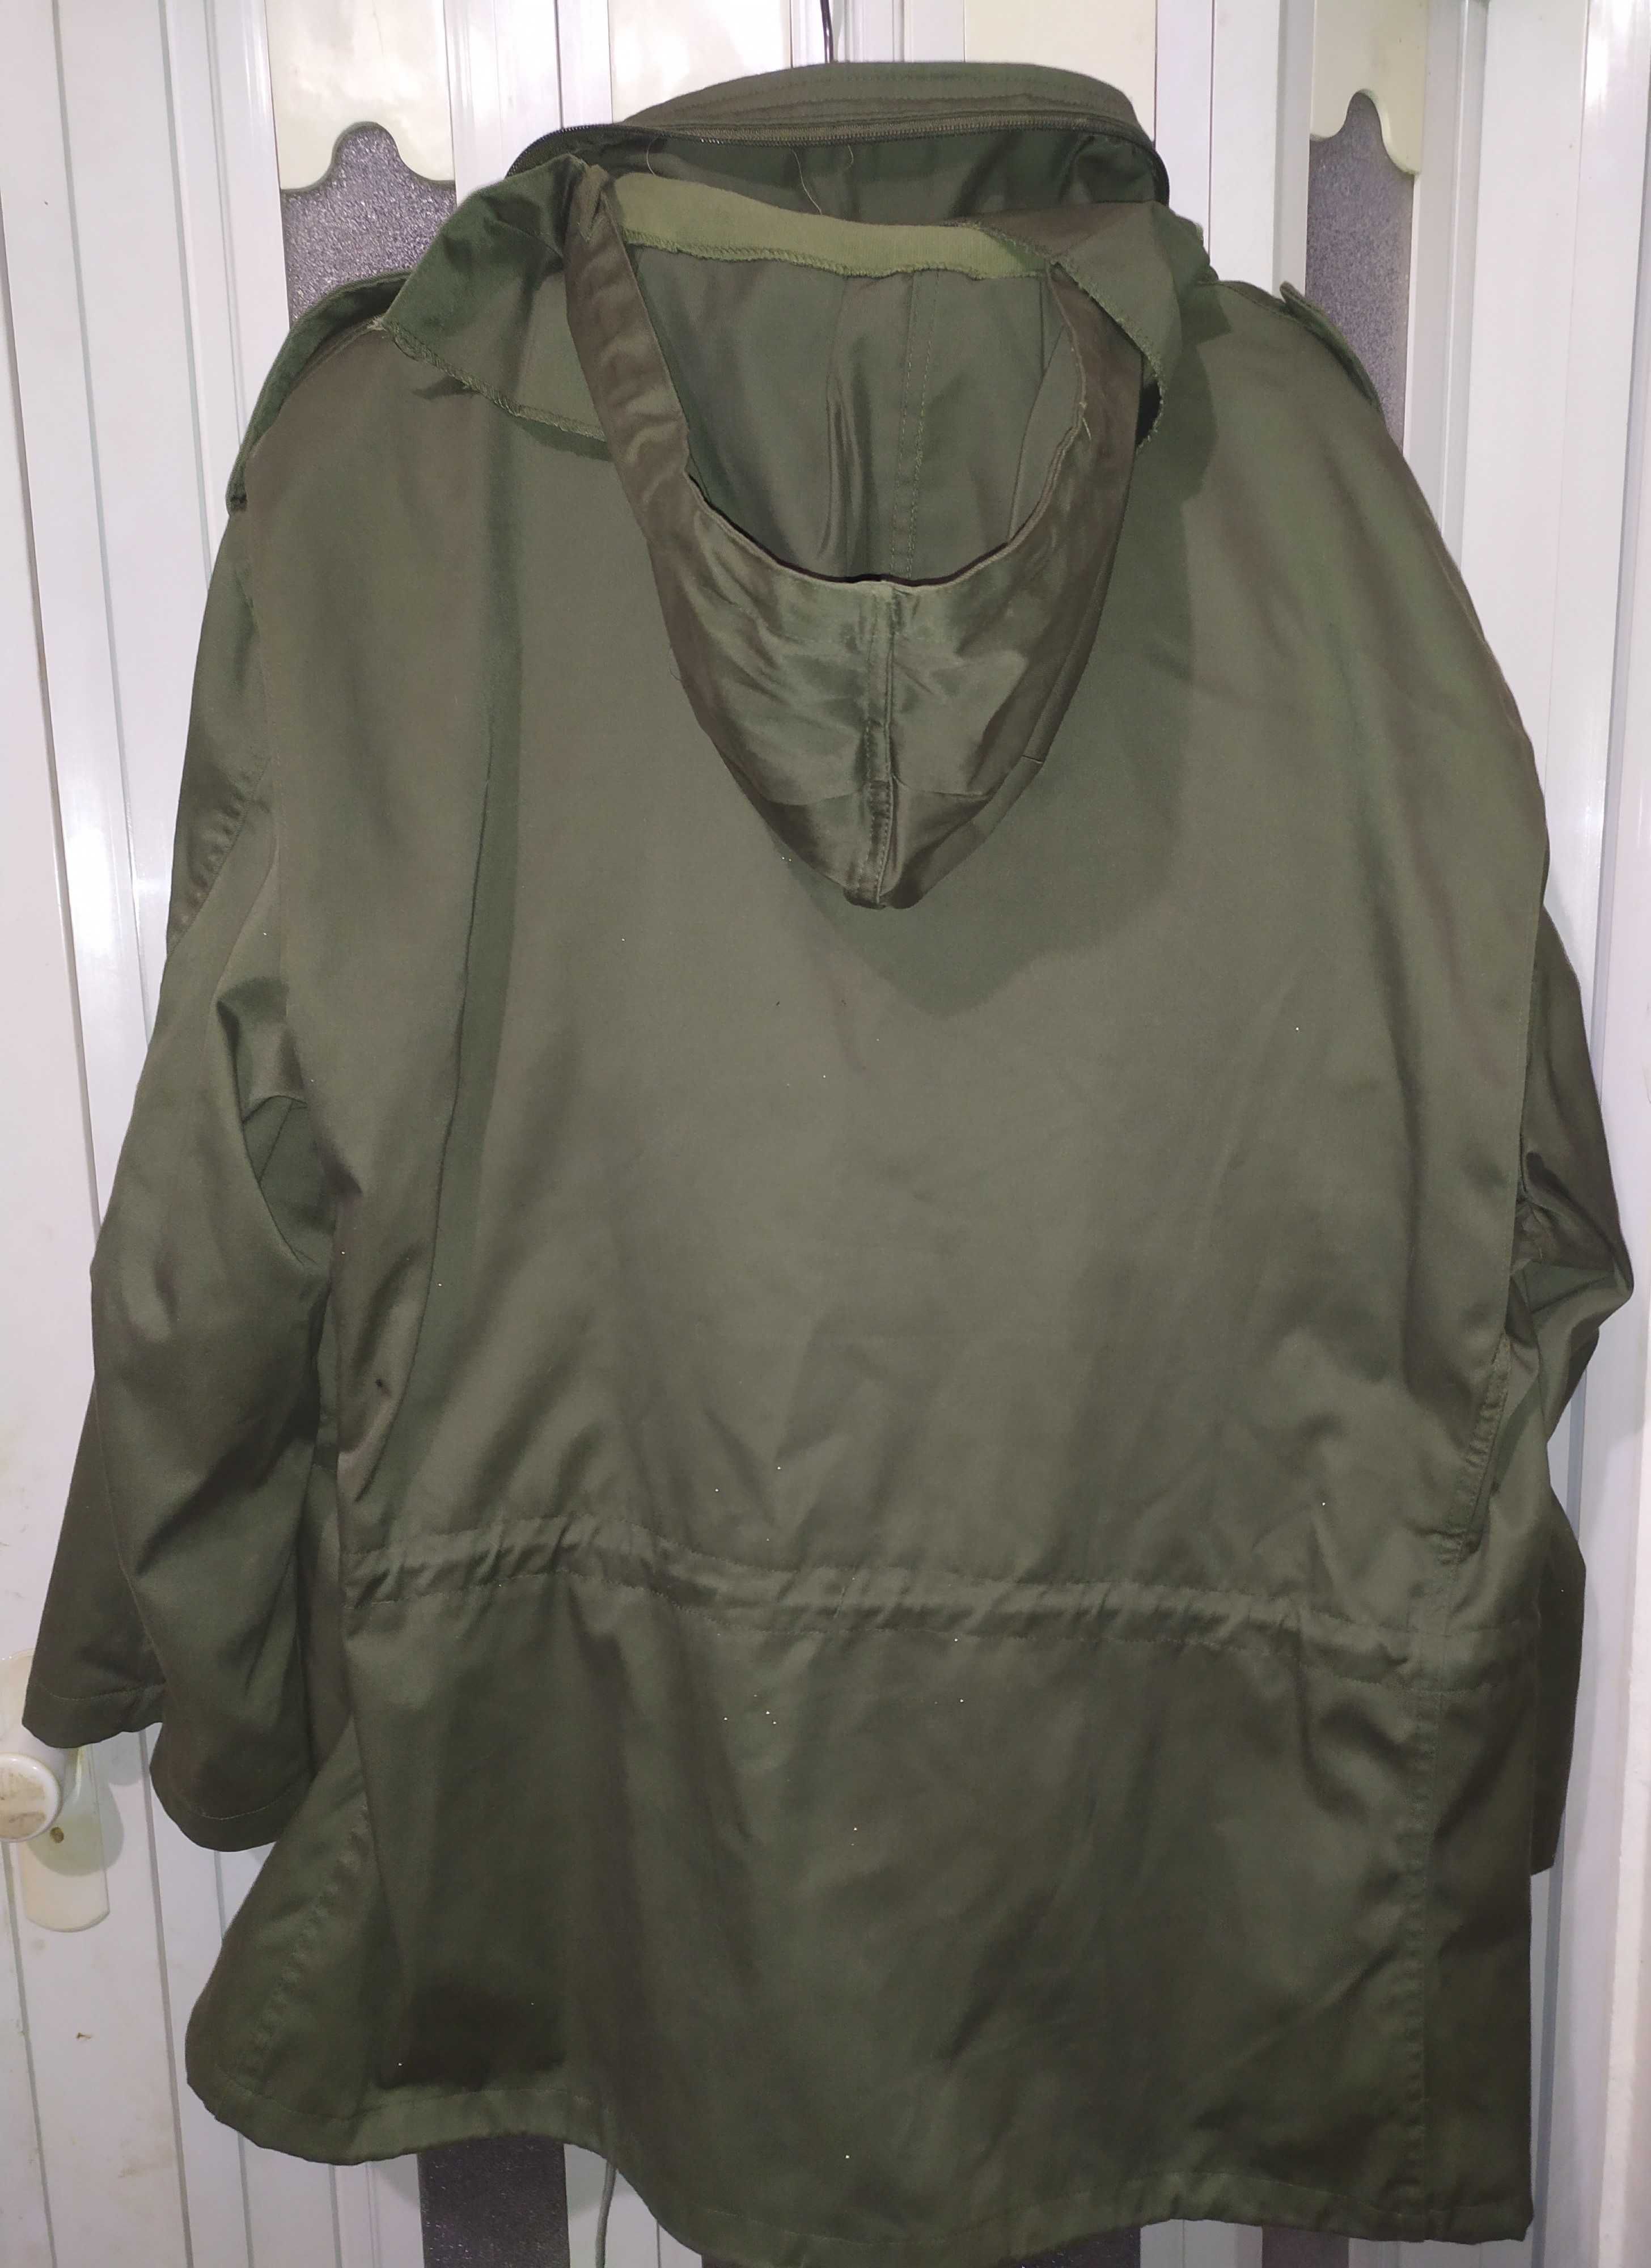 Куртка армии США M-65 Mil-Tec, р. 2Xl-R.